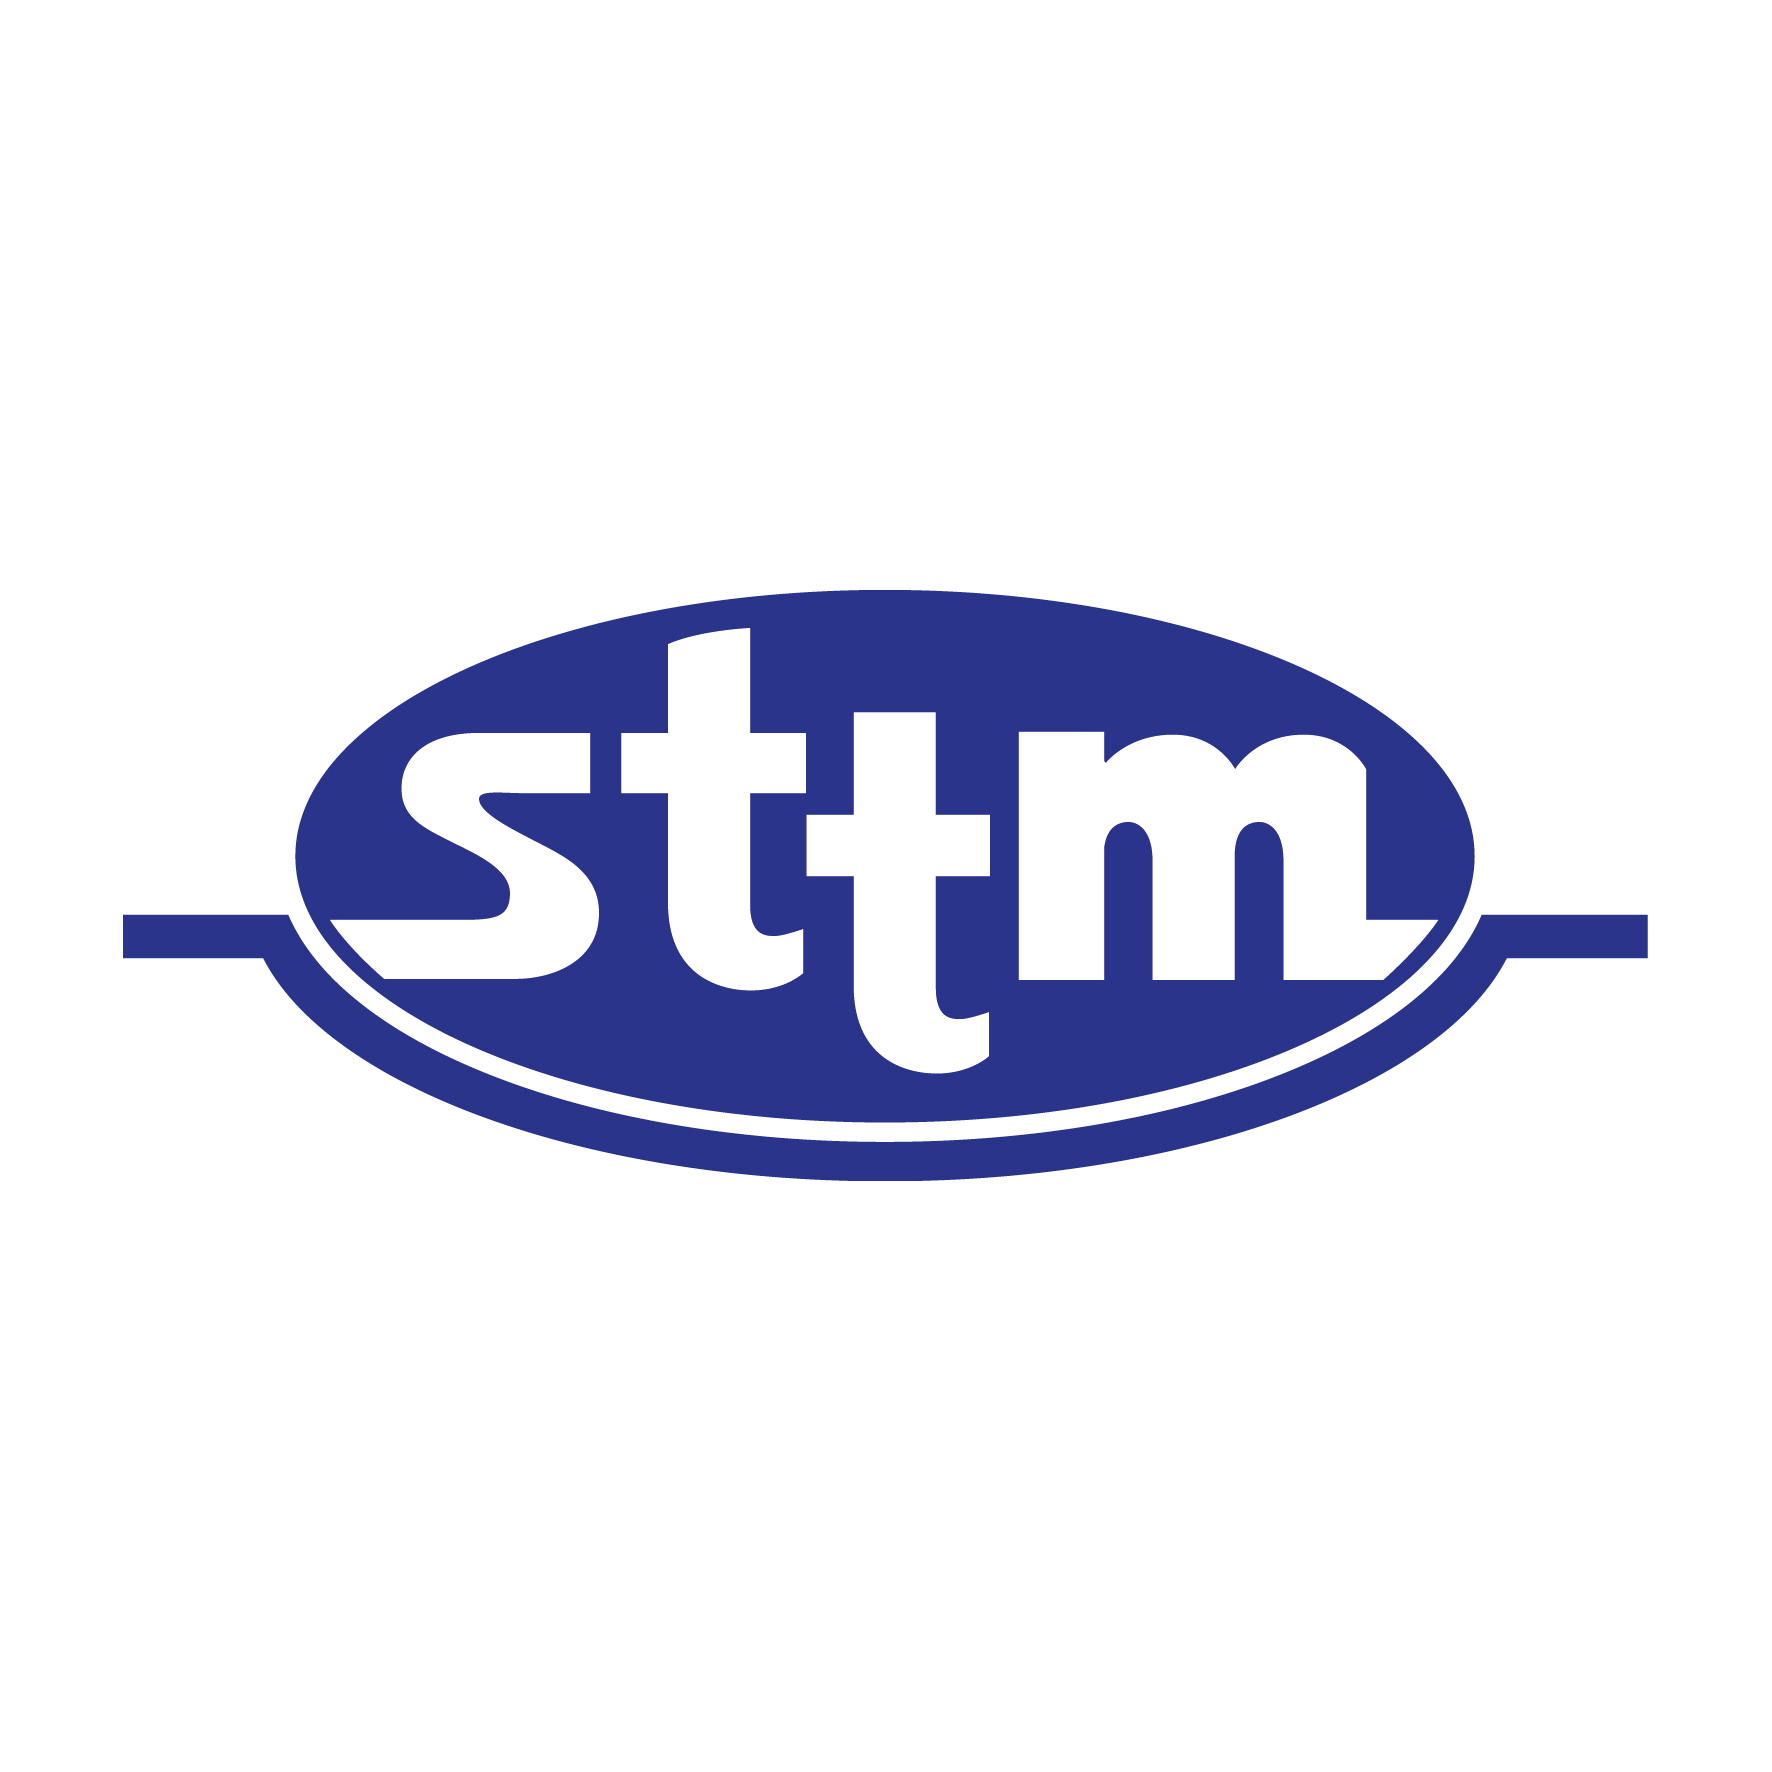 STTM